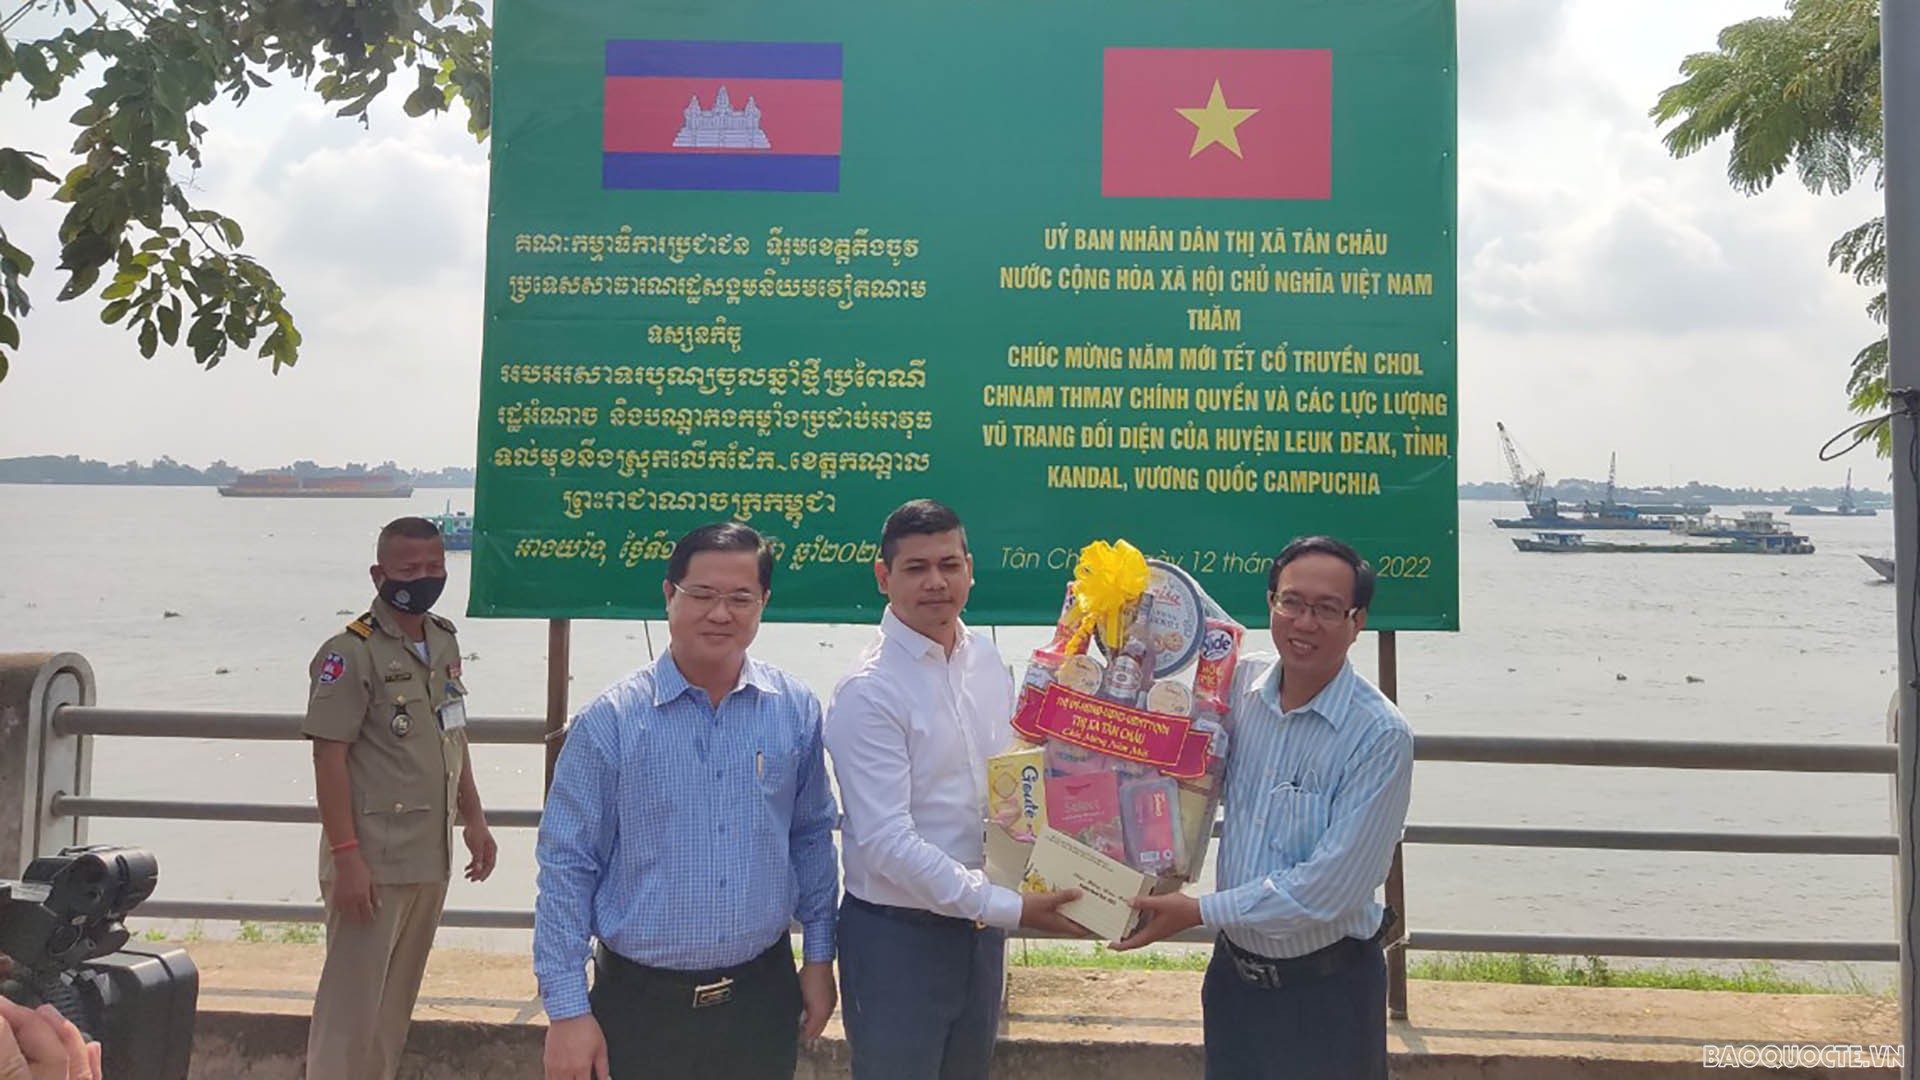 Thị uỷ, UBND thị xã Tân Châu tặng quà cho chính quyền huyện Lekdek, tỉnh Kandal, Campuchia. (Ảnh: Chiến Khu)